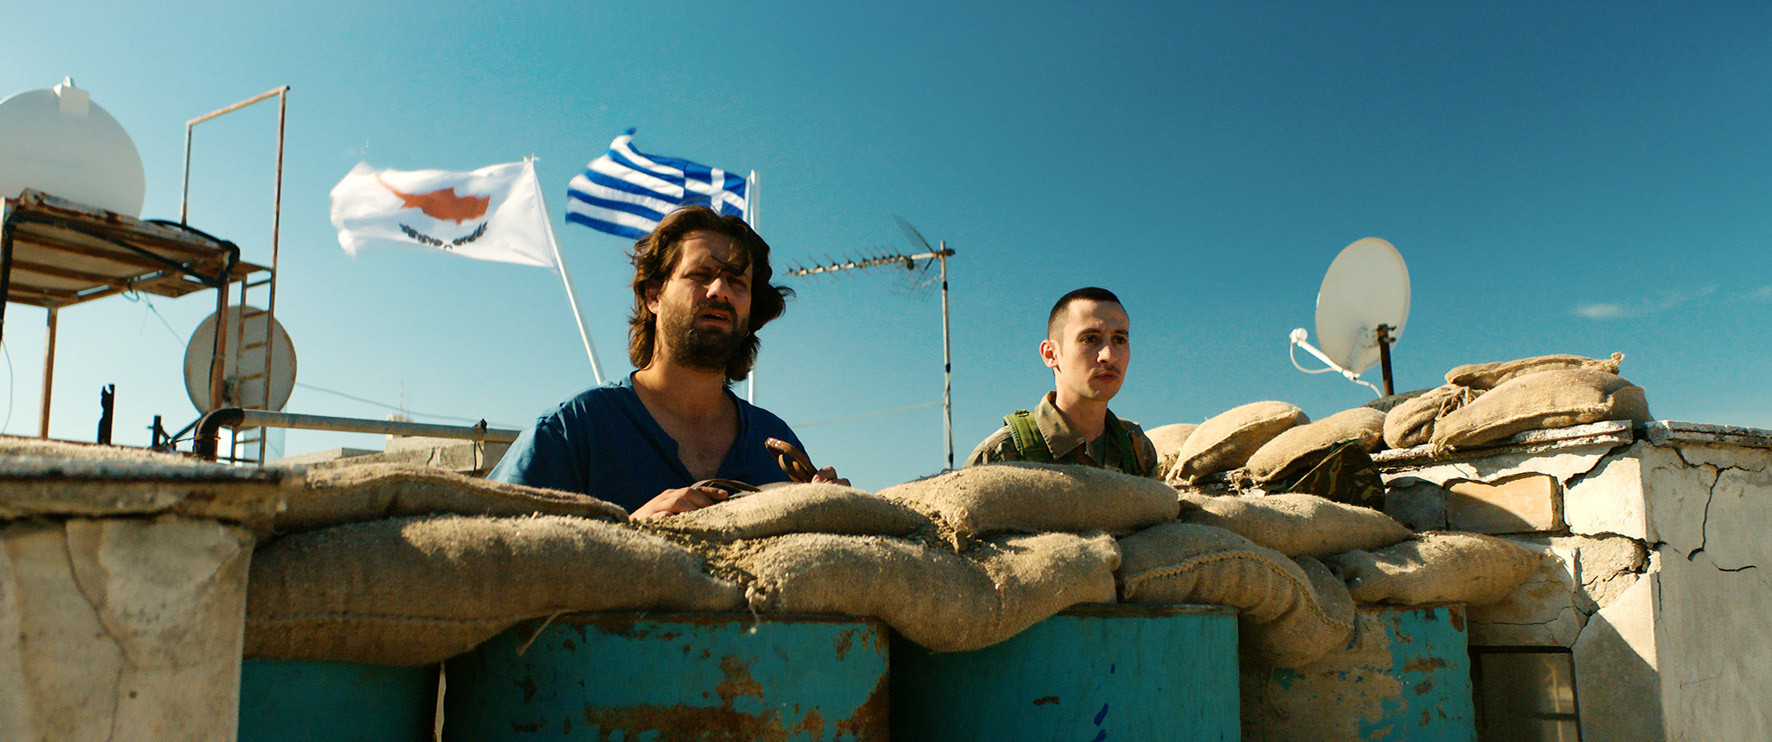 Το Ελληνικό Σινεμά αποκαλύπτεται μέσα από είκοσι μεγάλου μήκους ταινίες